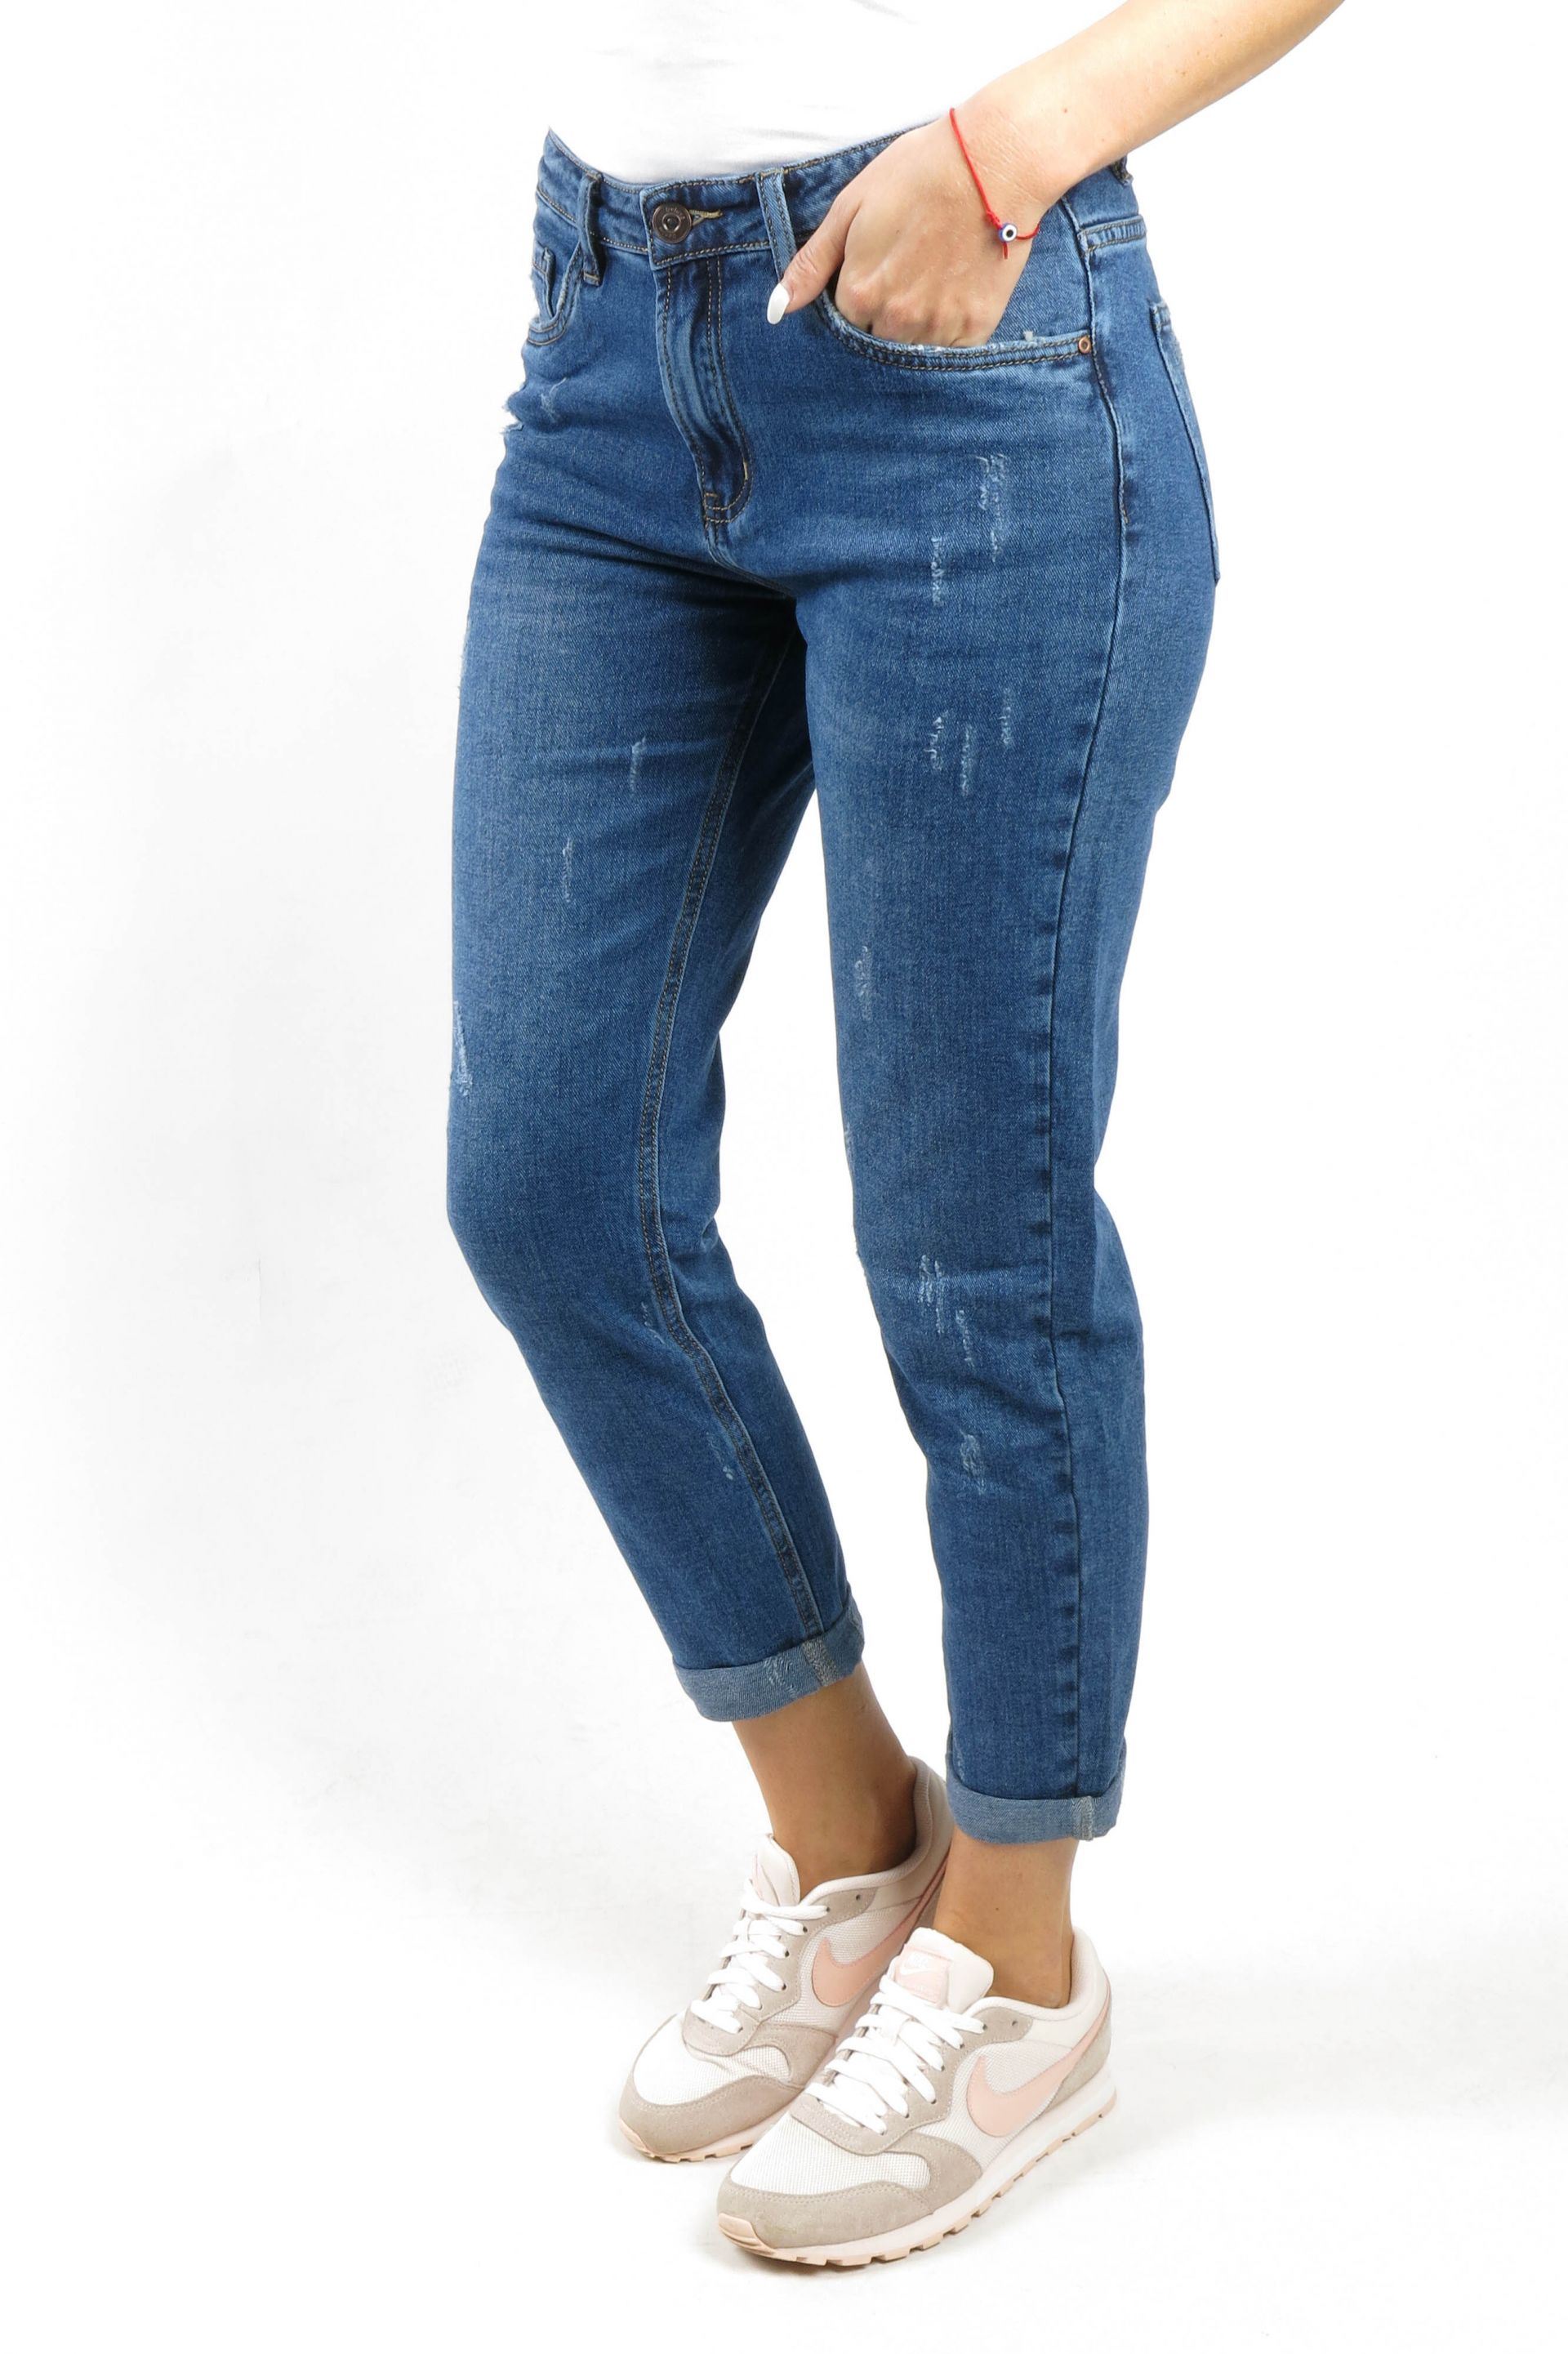 Jeans VS MISS VS6717